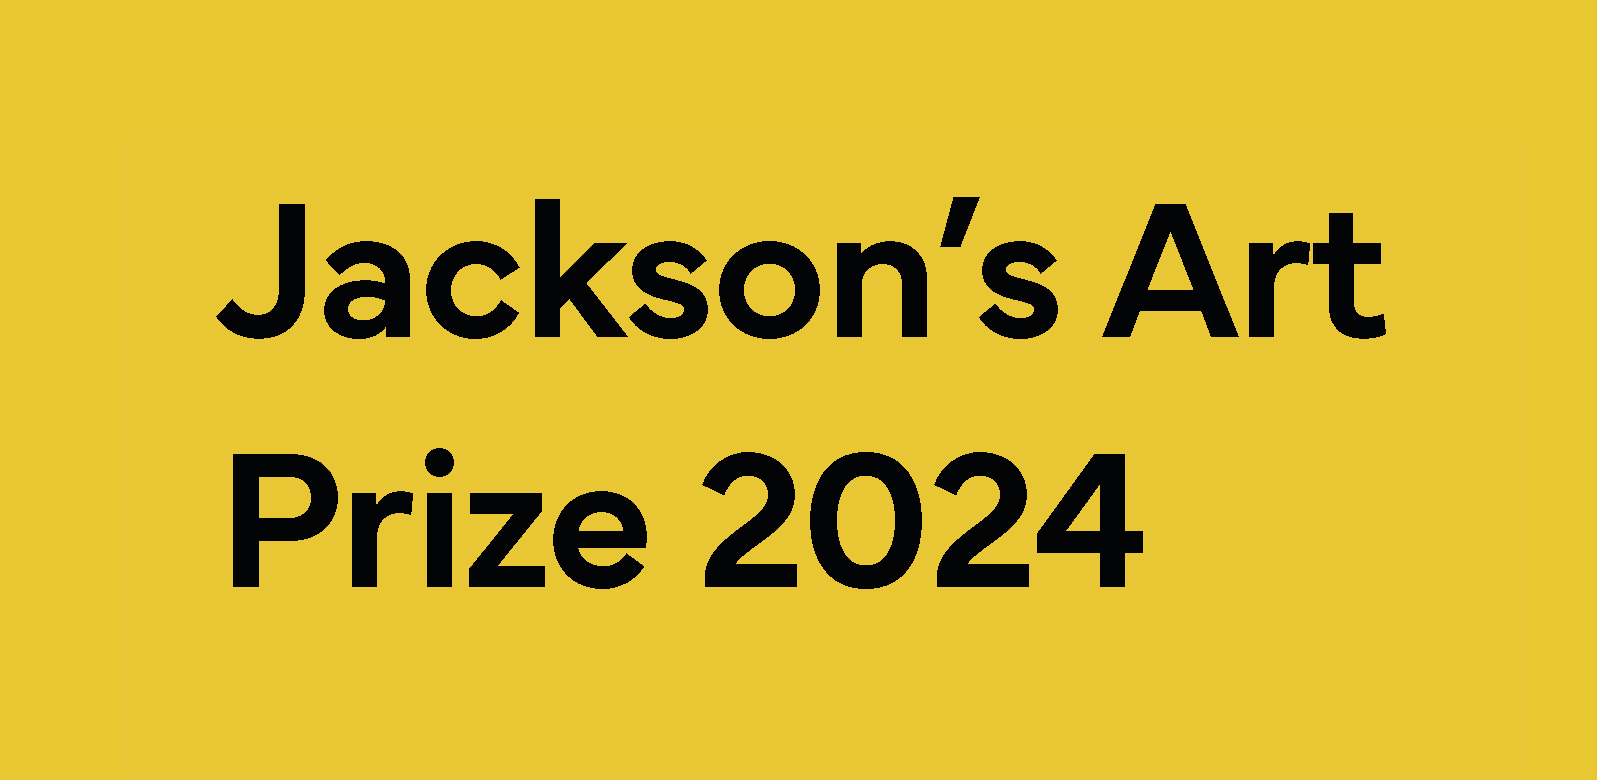 فراخوان جایزه هنر جکسون 2024